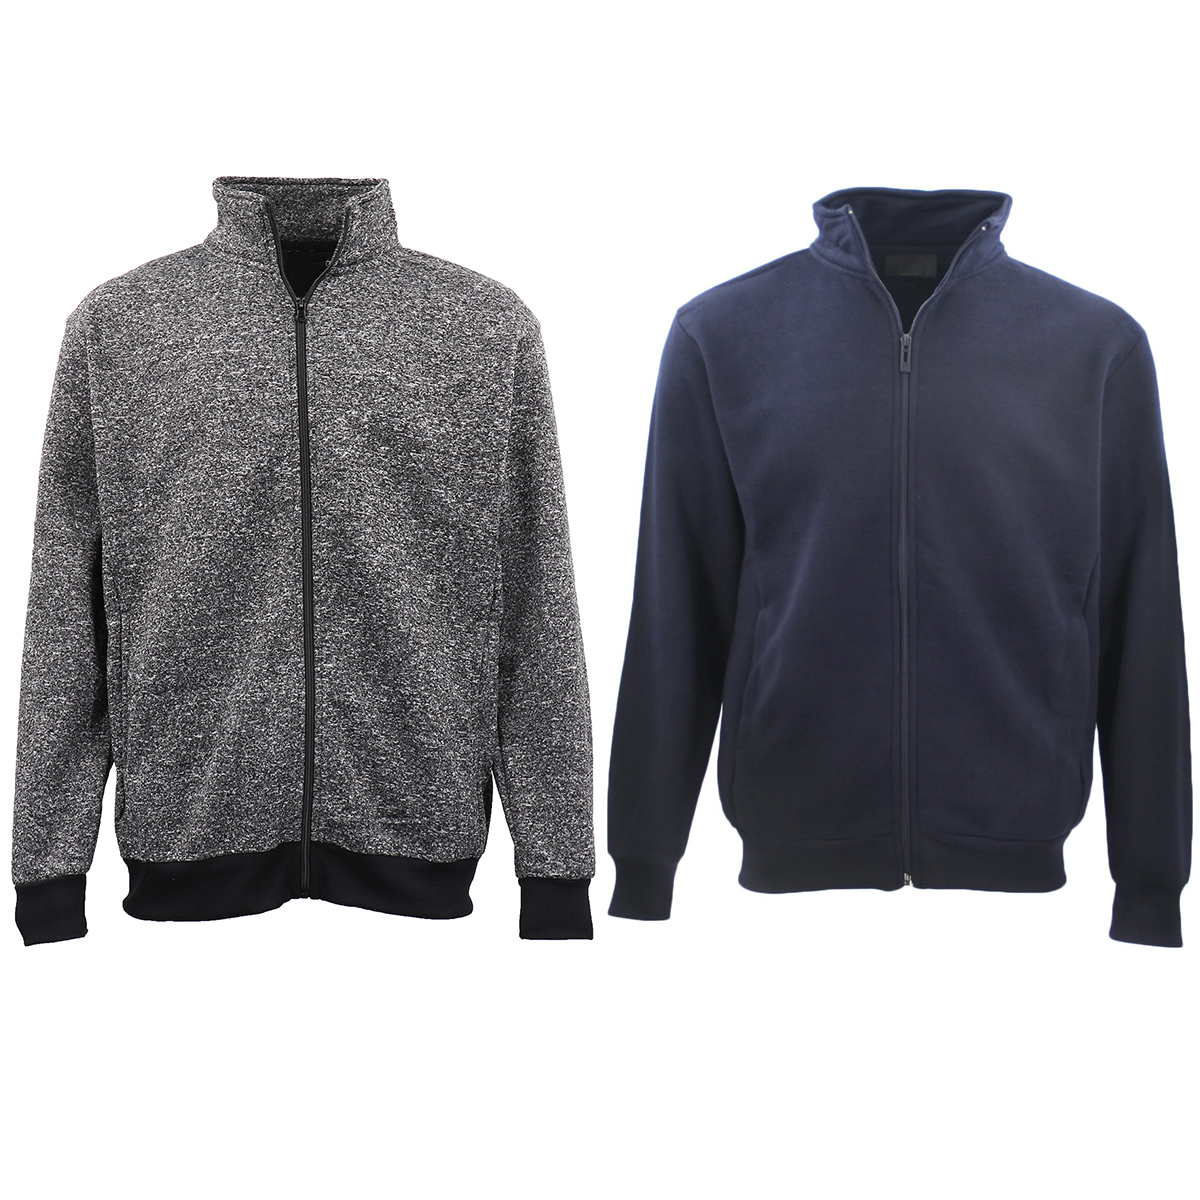 Adult Unisex Plain Fleece Lined Full Zip Up Jumper Jacket Men's Sweatshirt Coat